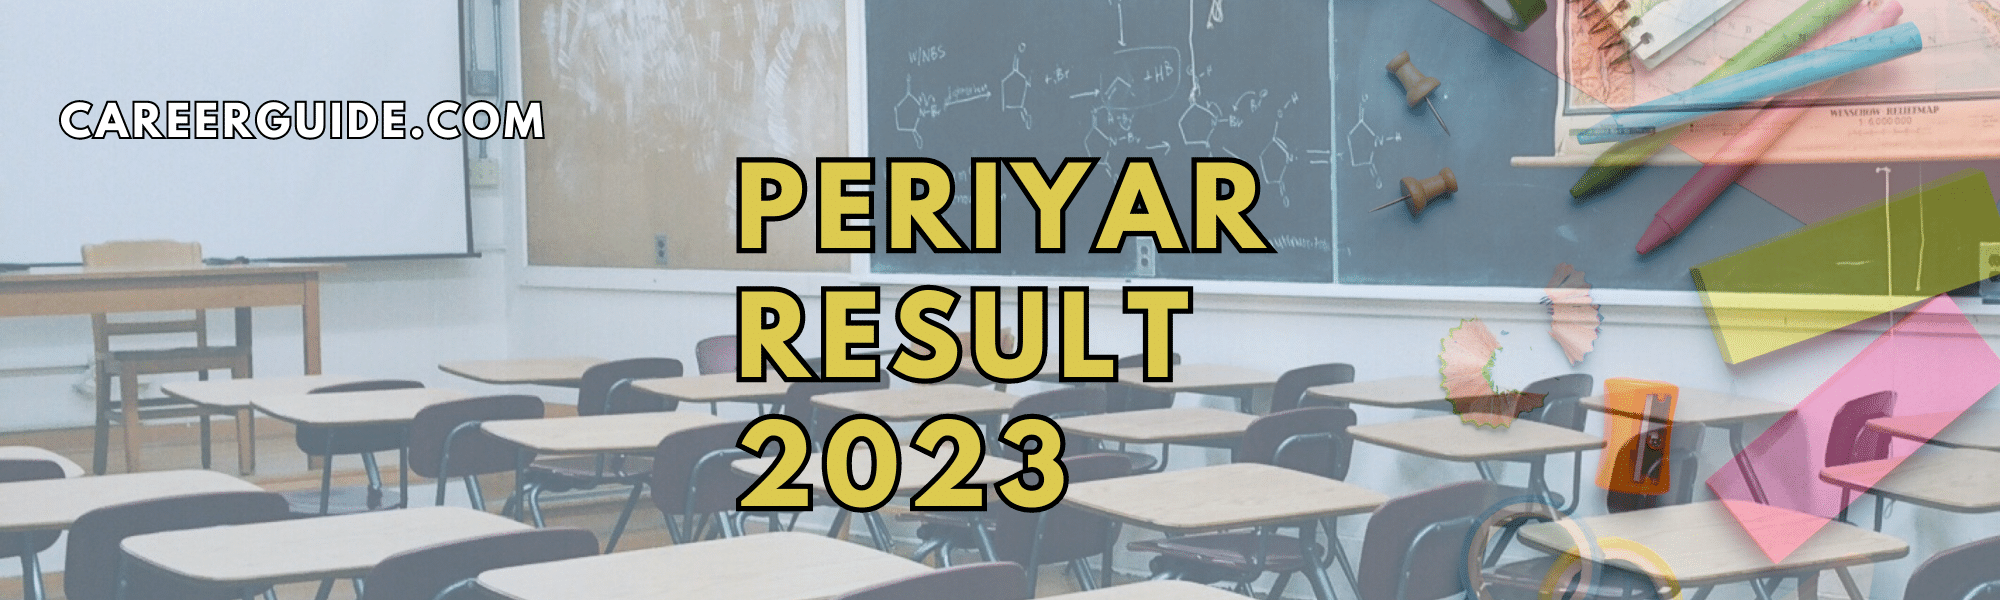 PERIYAR Result 2023